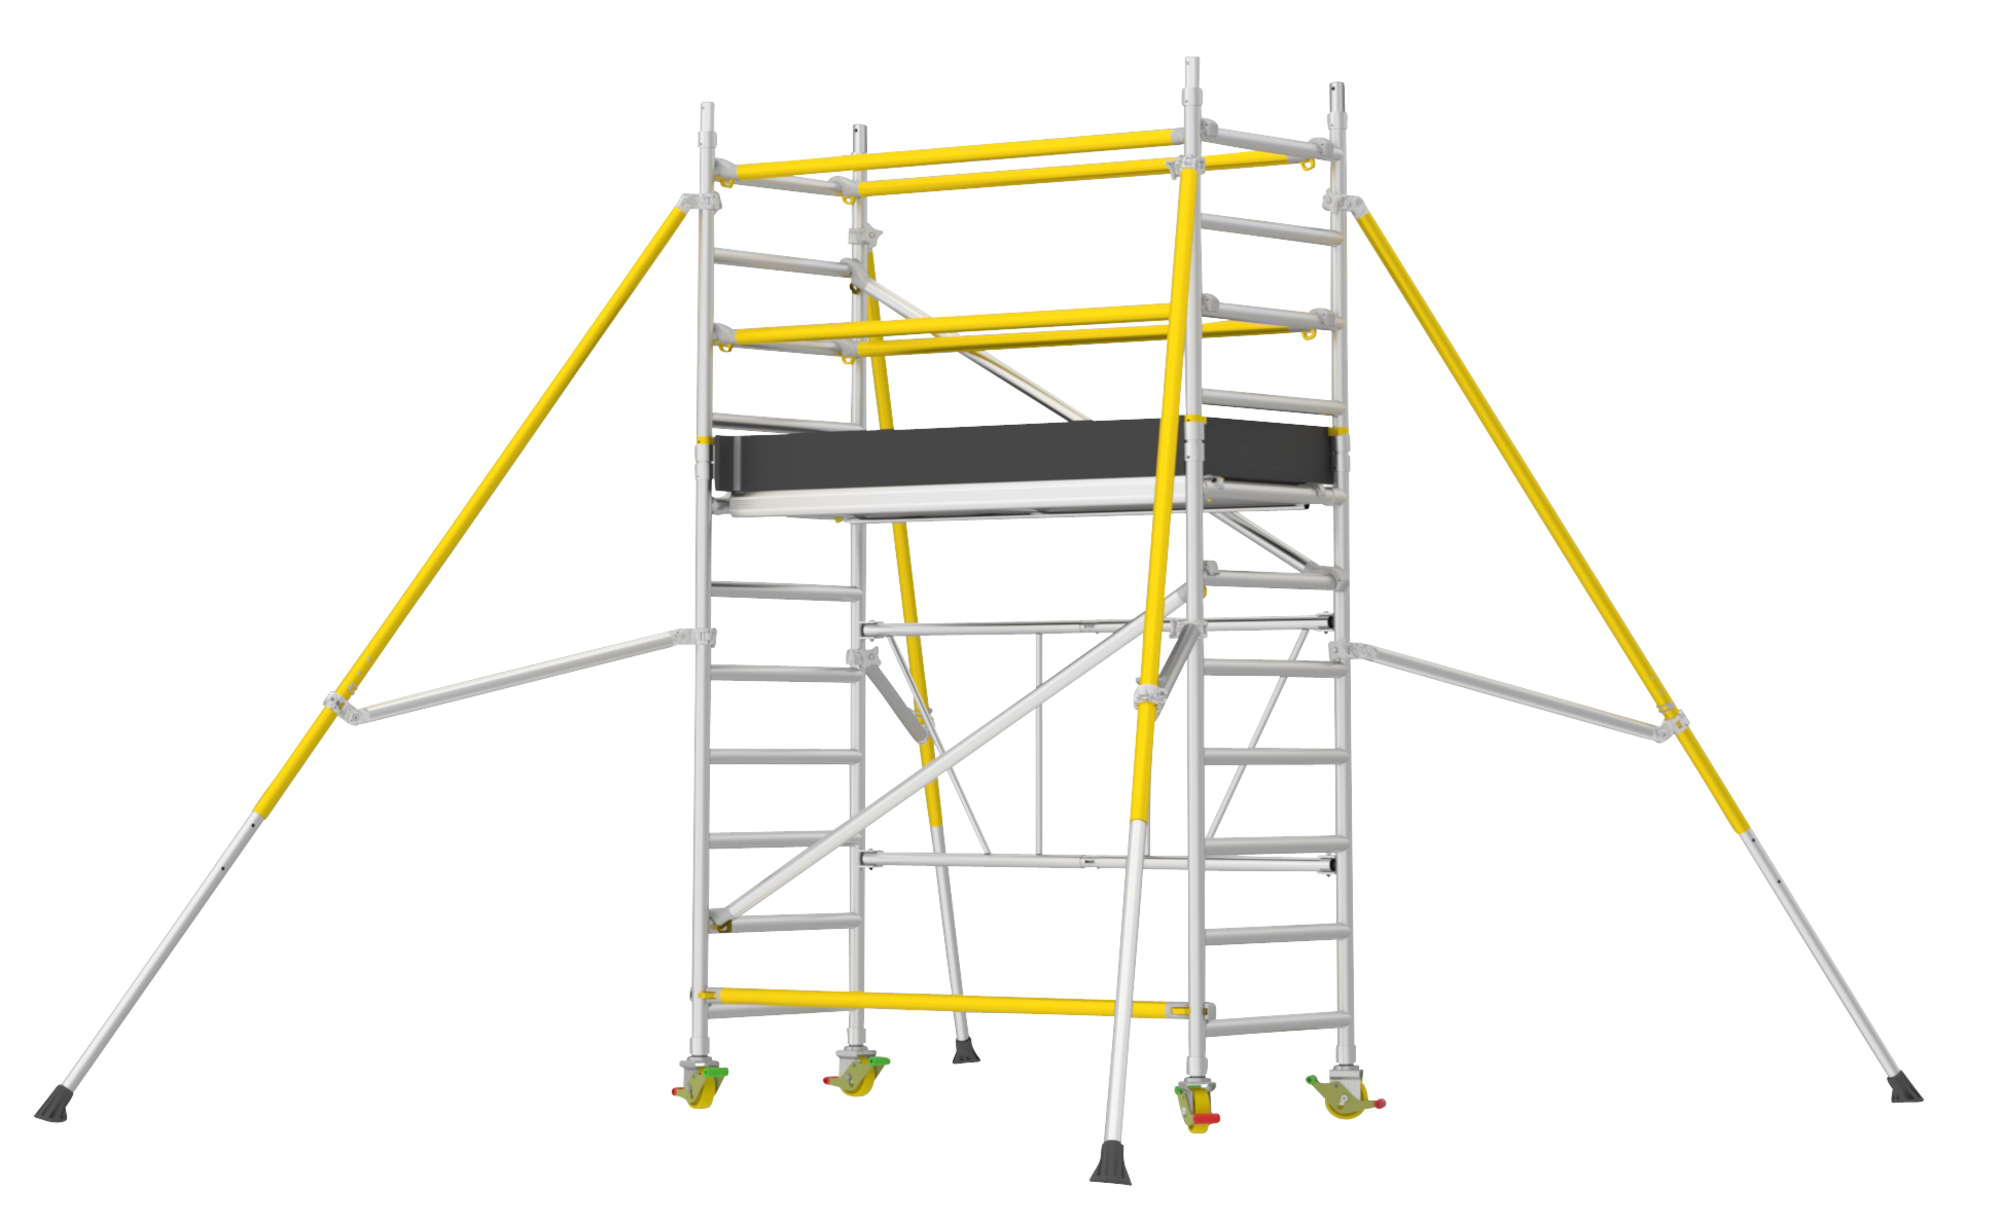 Wibe Ladders Foldbart FT 750 1,8 m. | Carl Ras